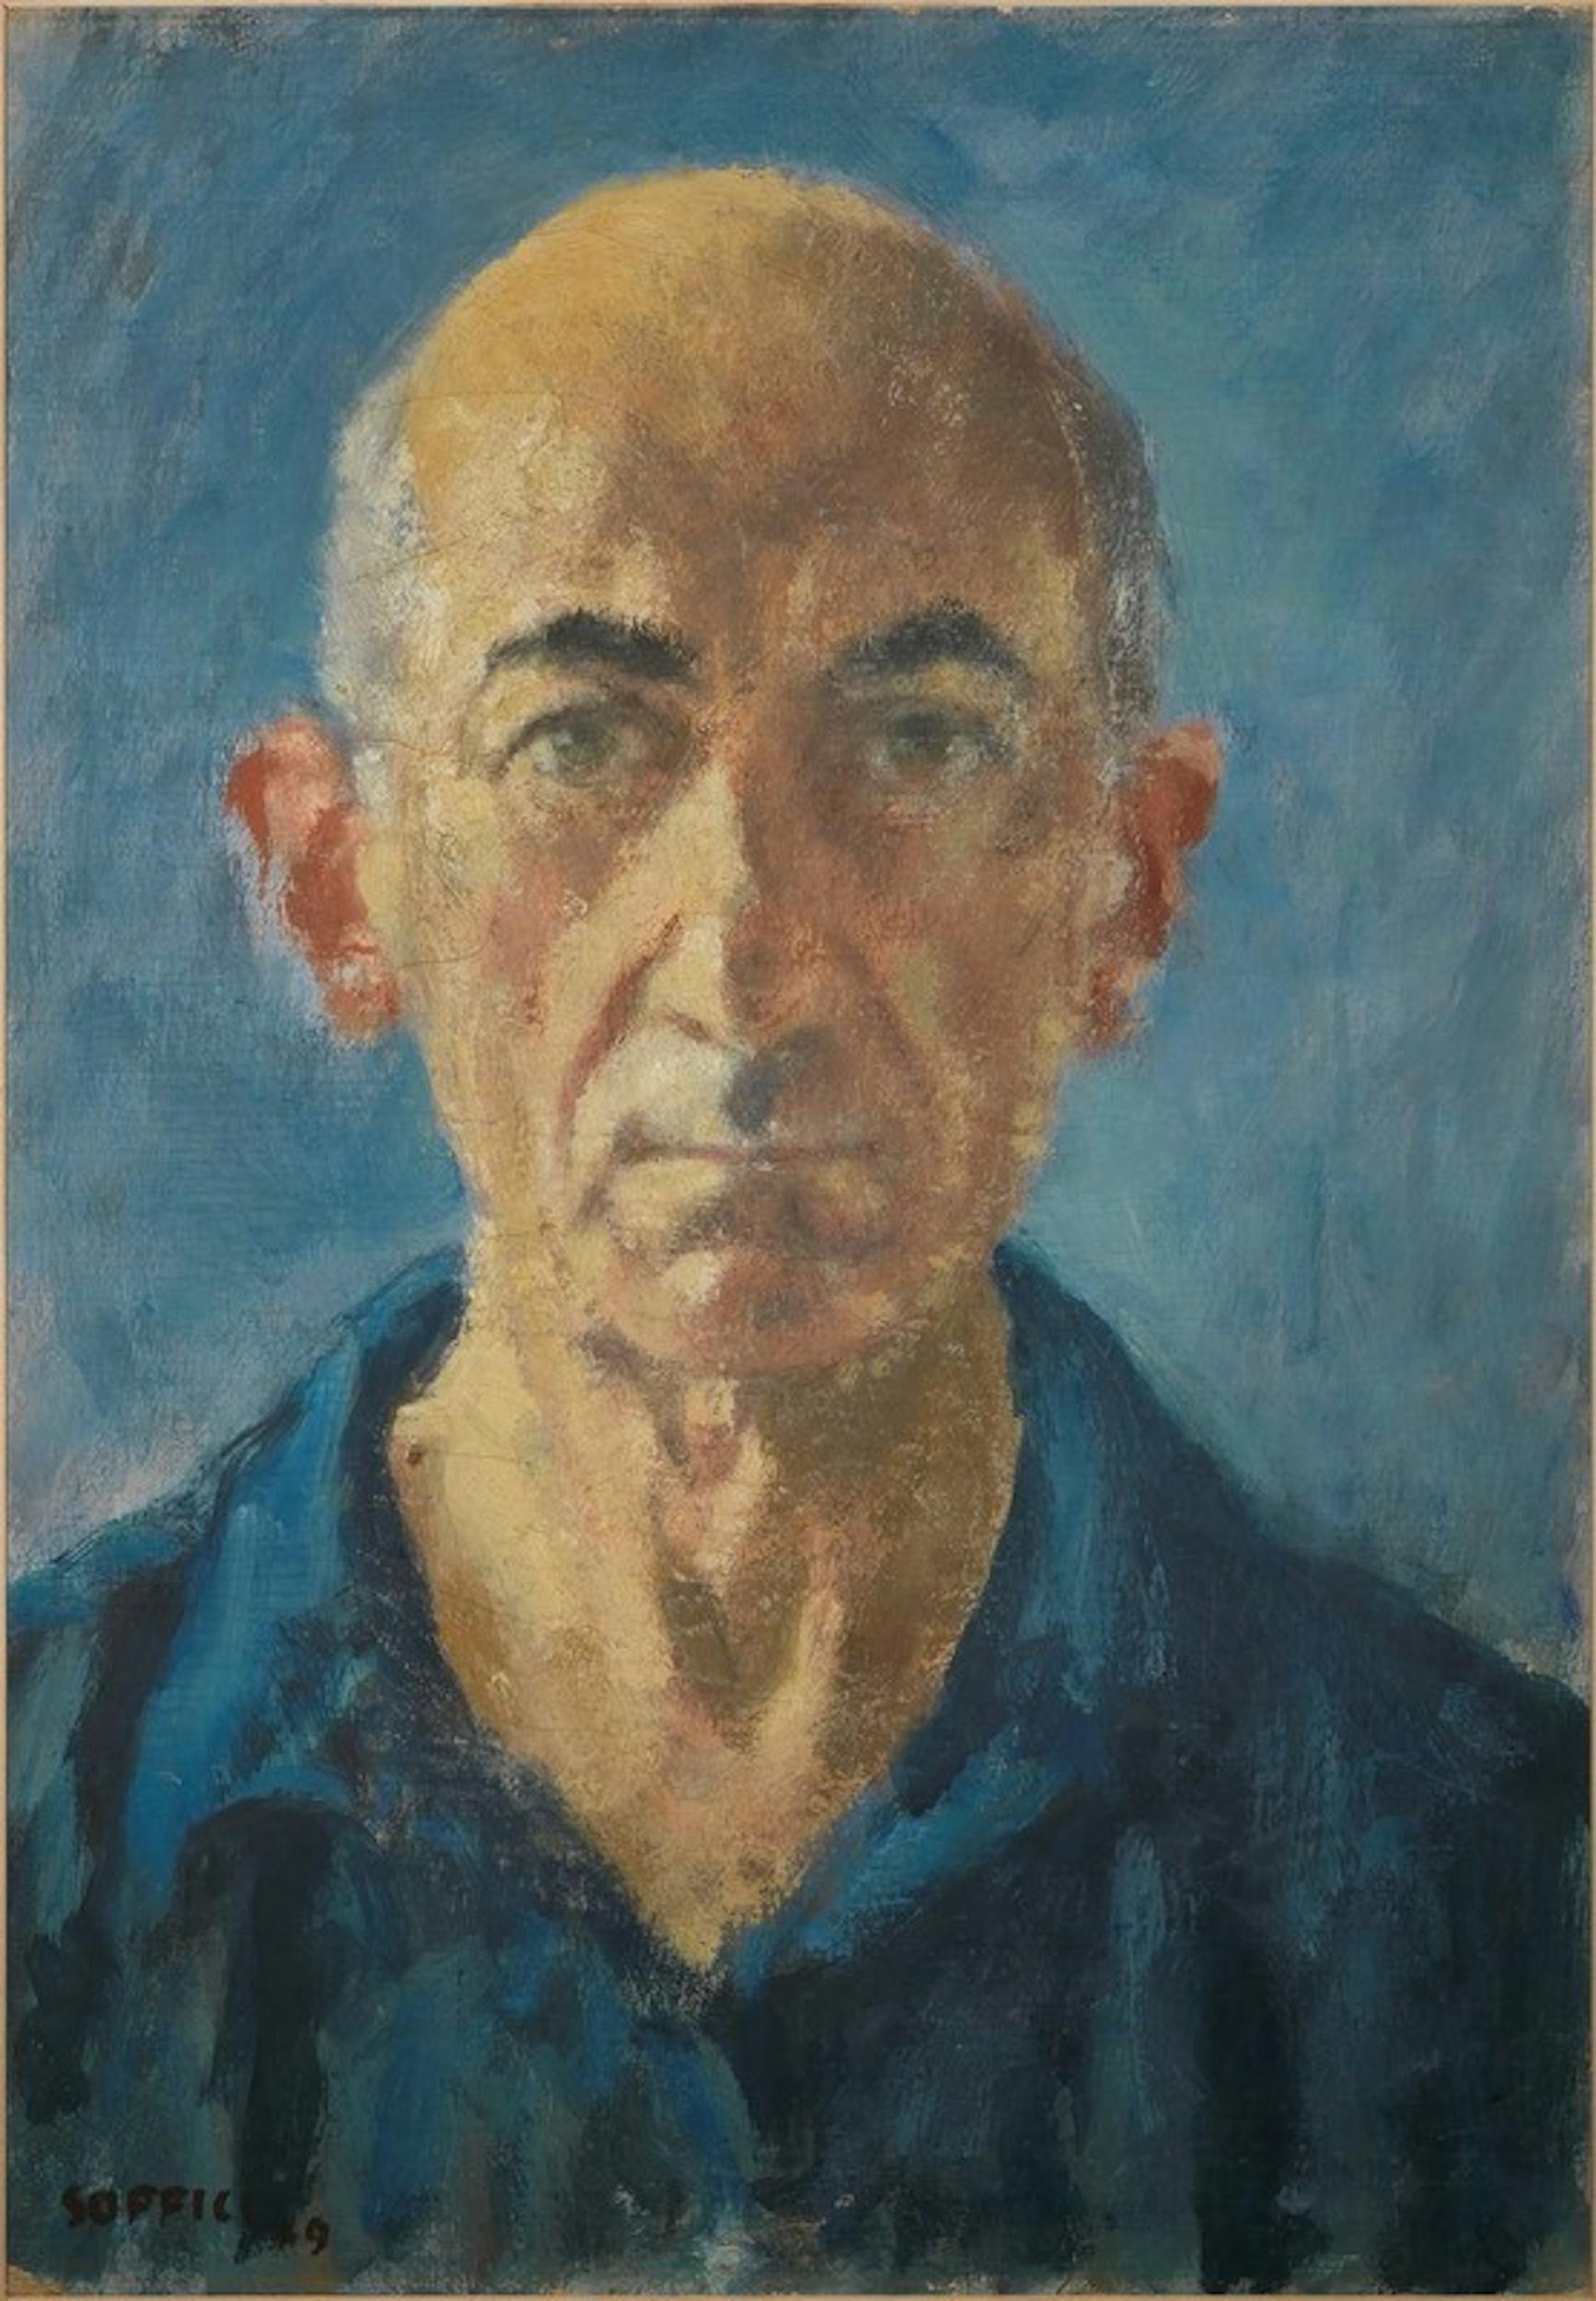 Ardengo Soffici, Autoritratto di Ardengo Soffici, olio su tela cartonata, 1946 ca. - 1949, Galleria degli Uffizi, Firenze